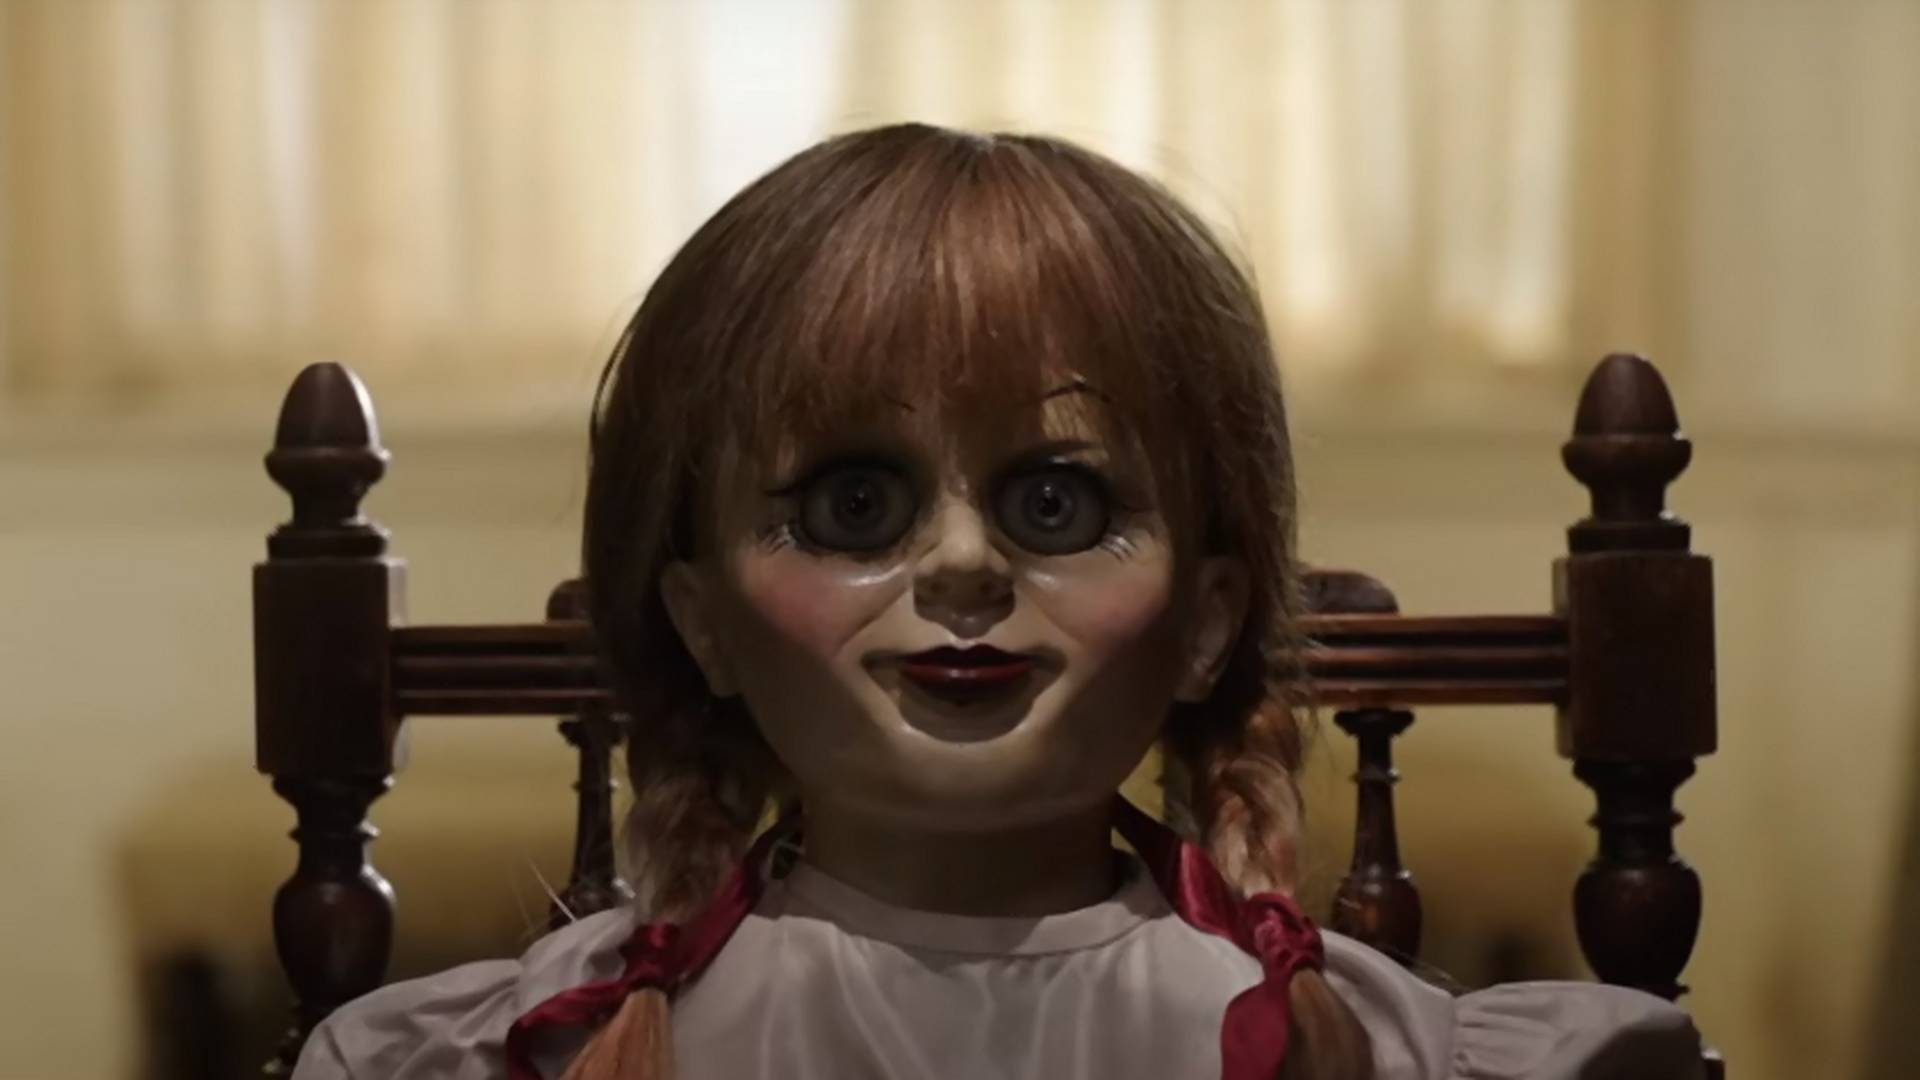 Zobacz dwie nowe sceny z horroru "Annabelle: Narodziny zła". Premiera nadchodzi wielkimi krokami